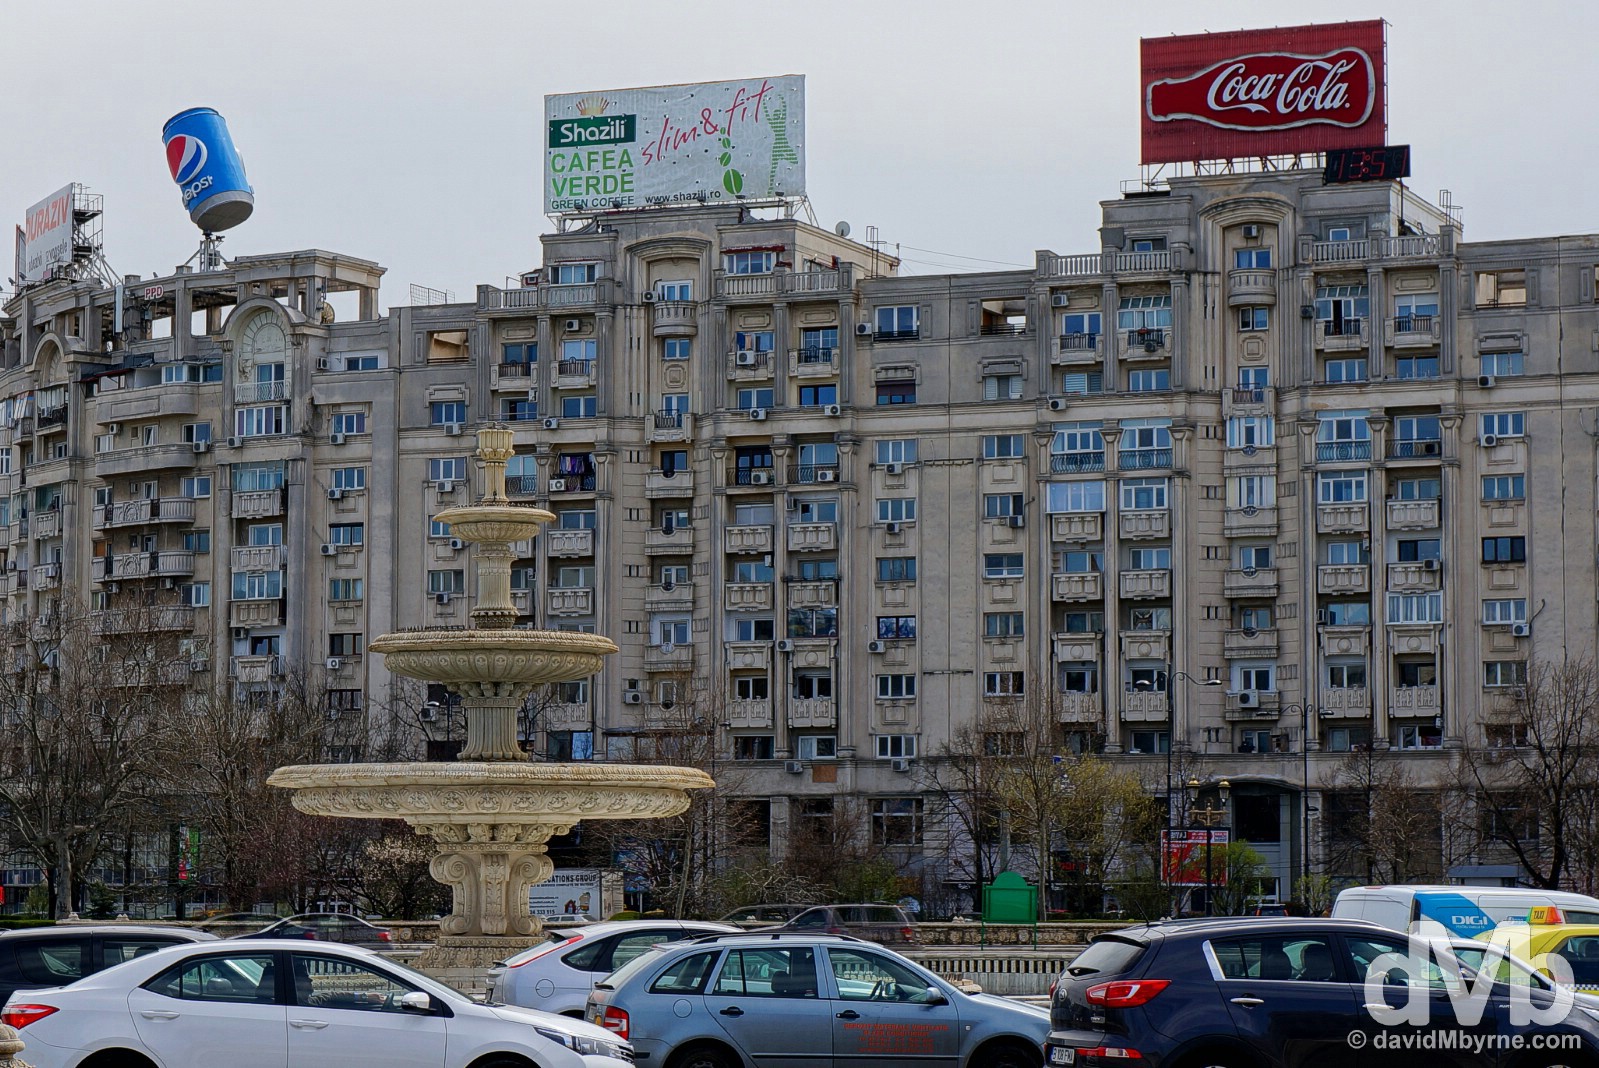 Piata Unirii, Bucharest, Romania. April 1, 2015.